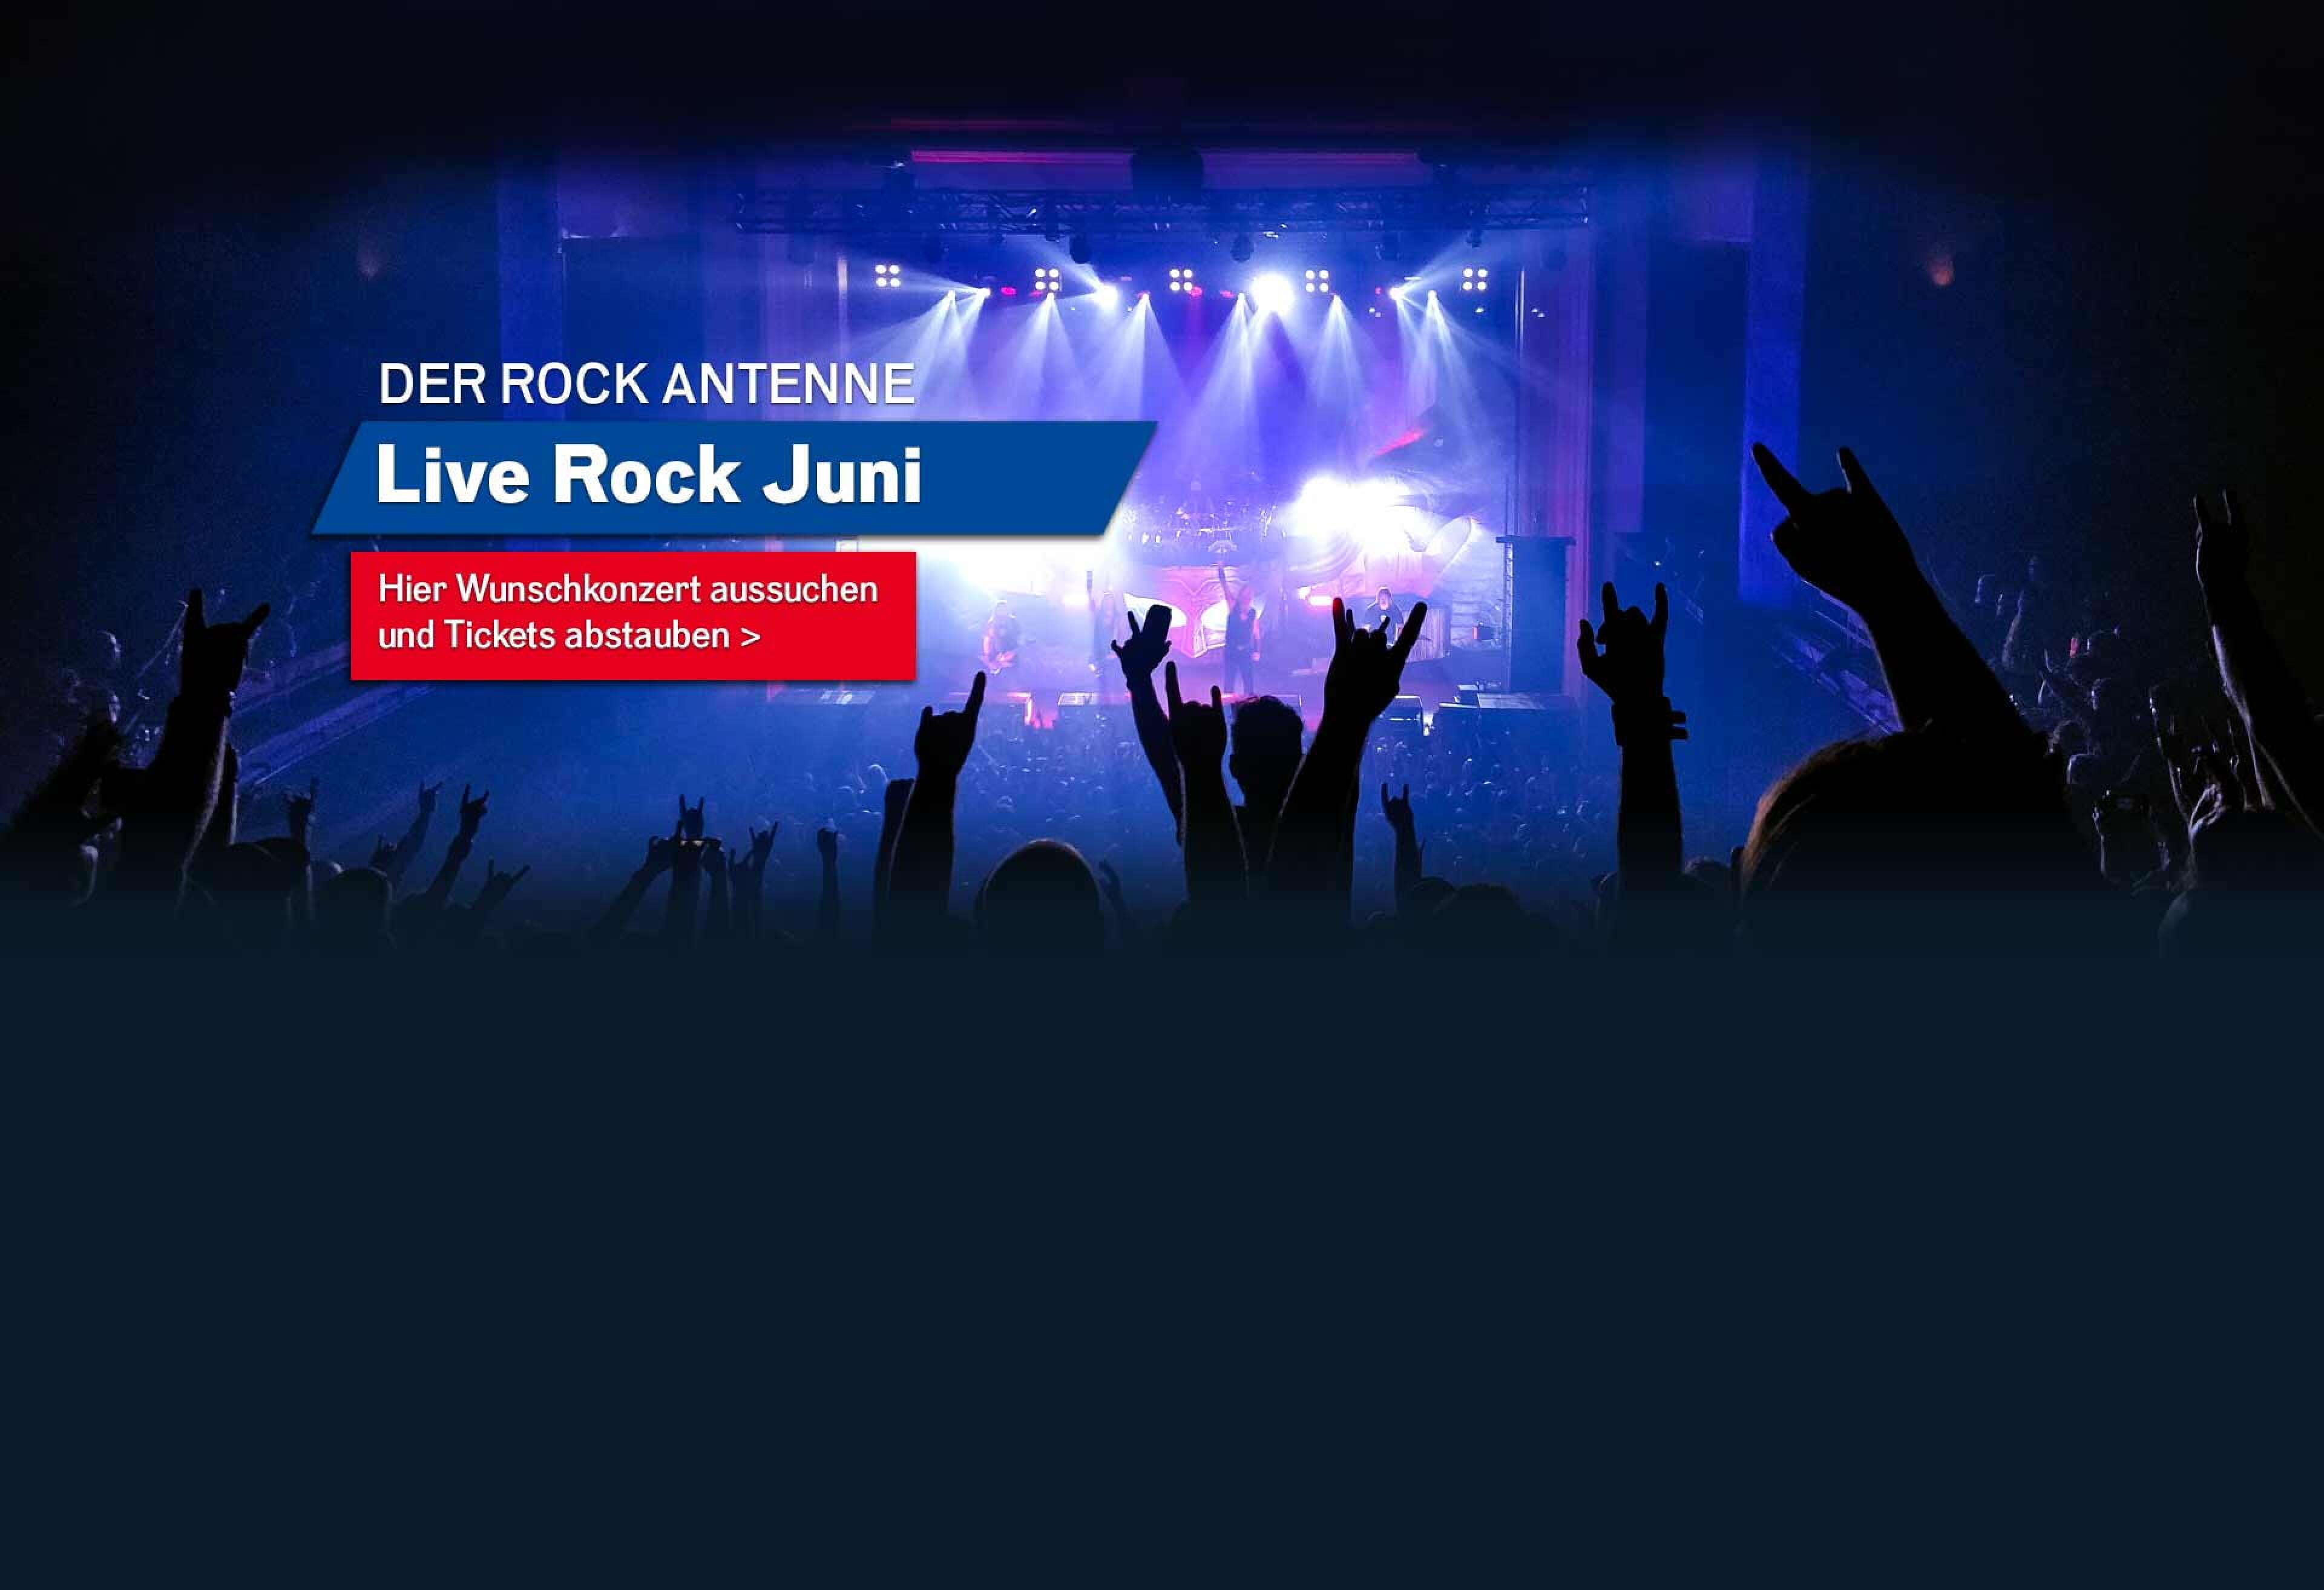 Bild eines Konzert-Publikums mit Blick auf die Bühne mit Aufschrift ROCK ANTENNE Live Rock Juni - hier Wunschkonzert aussuchen und Tickets abstauben!